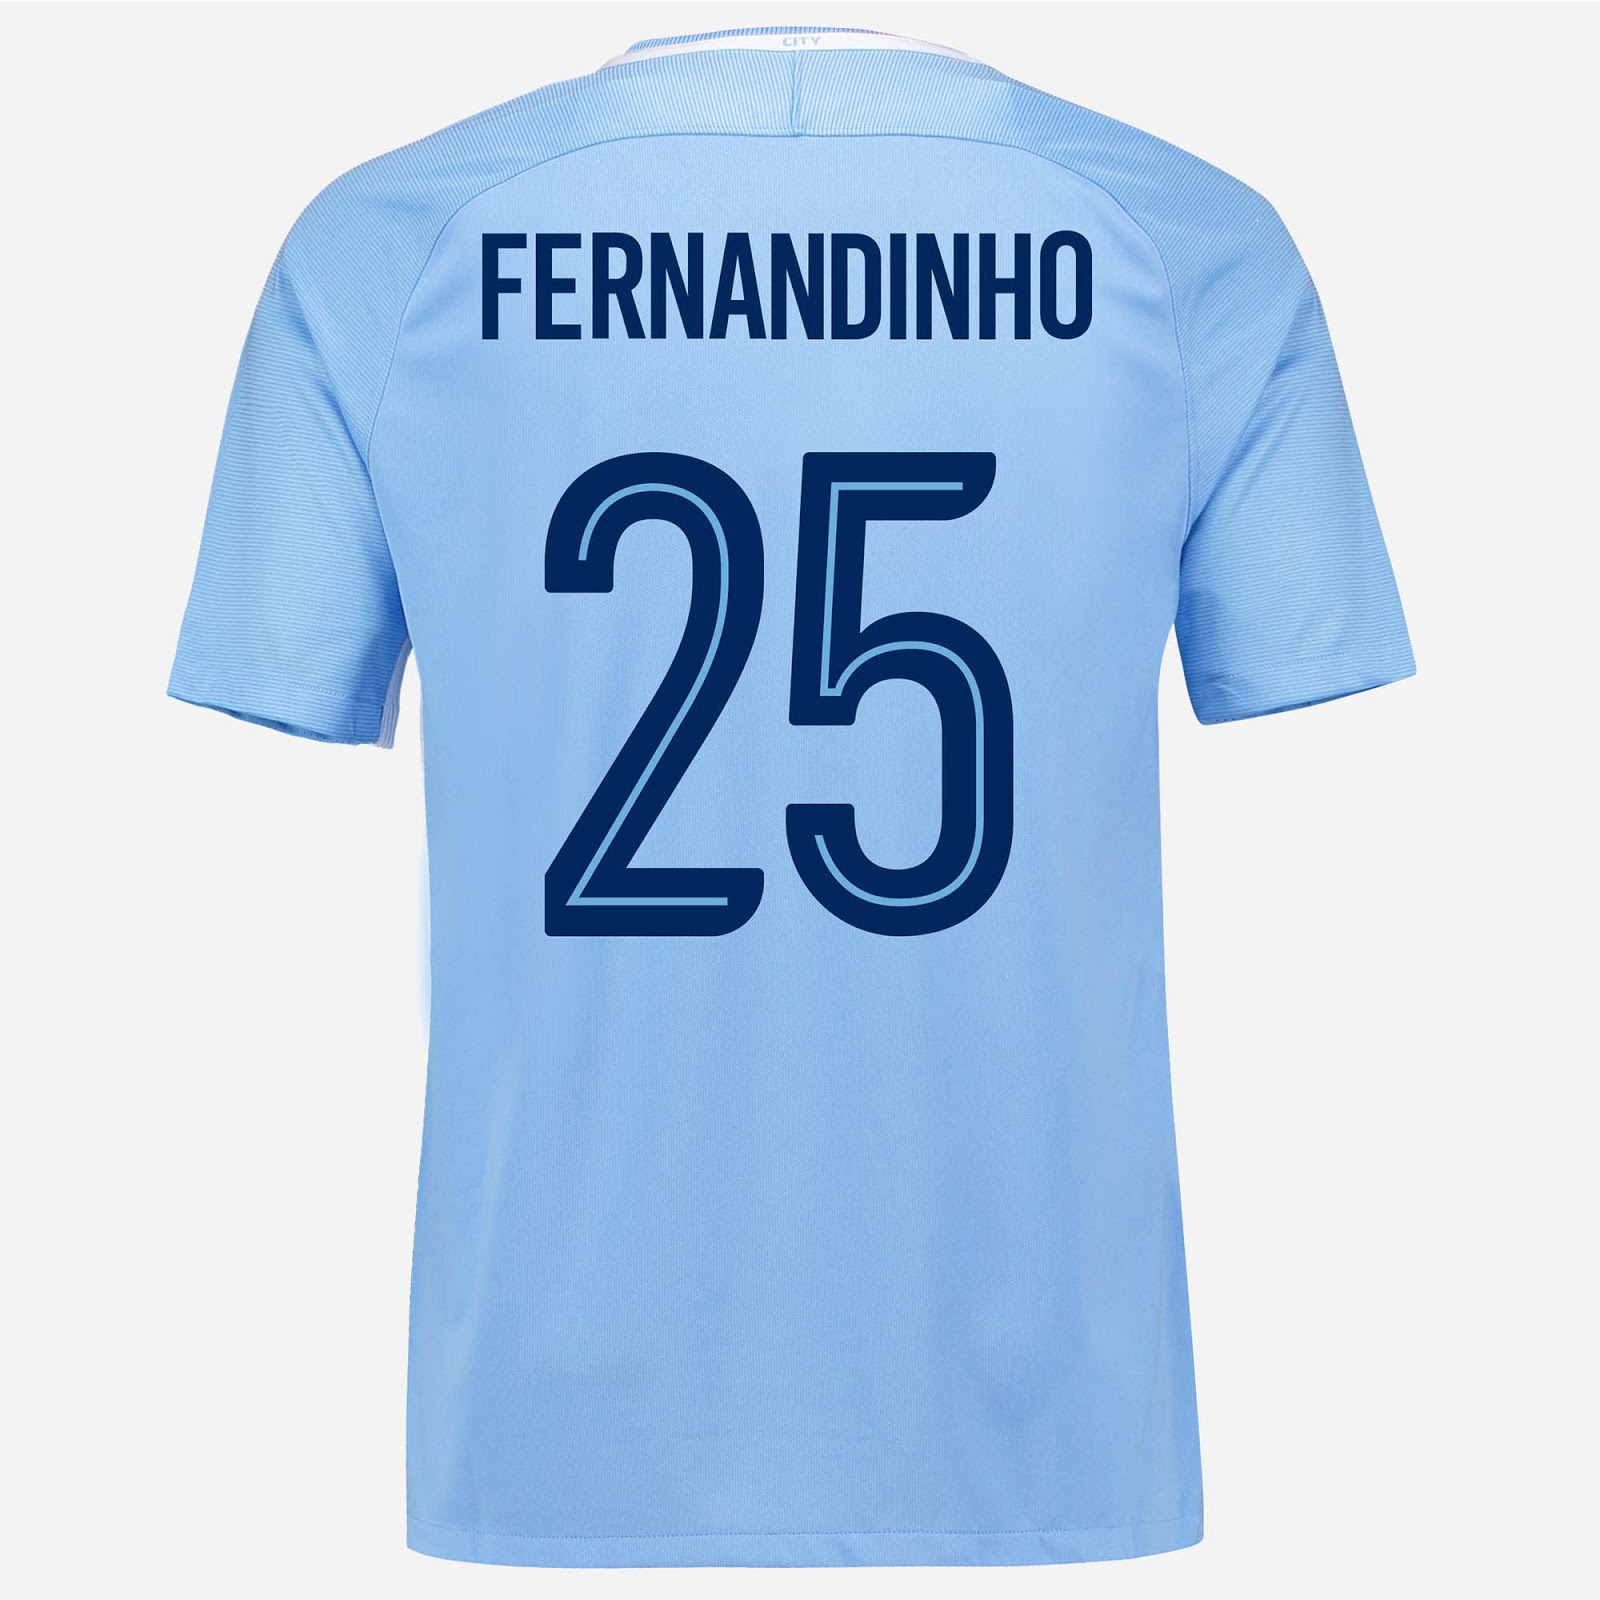 FERNANDINHO - 2017/18 Champions League. - Manchester City FC